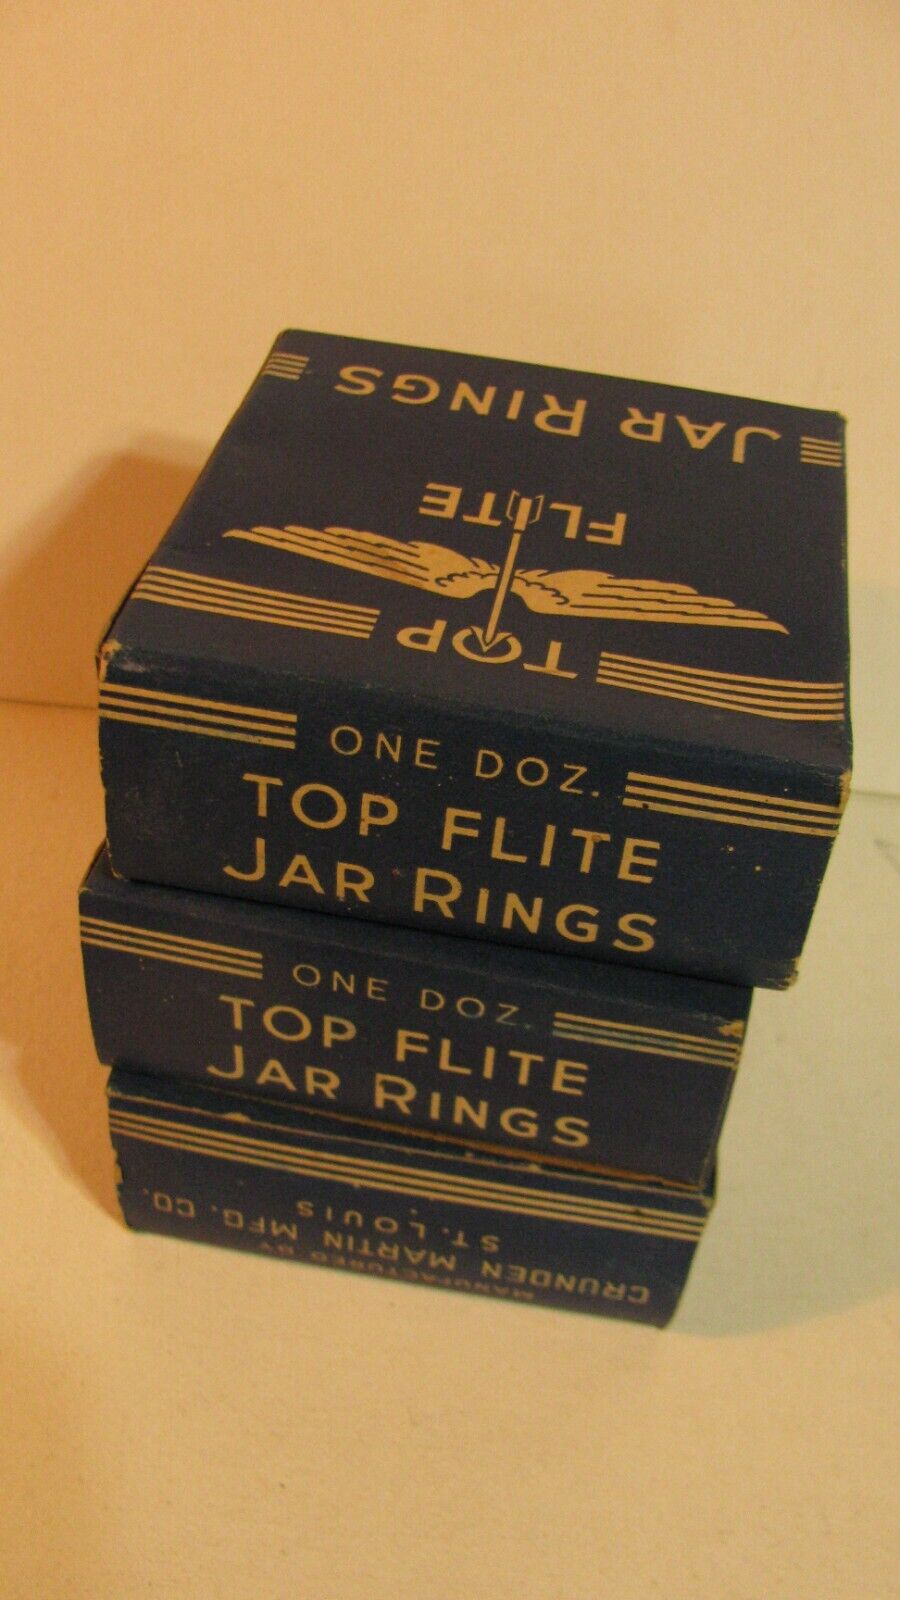 Top Flite Jar Rings - 3 boxes of 12 each